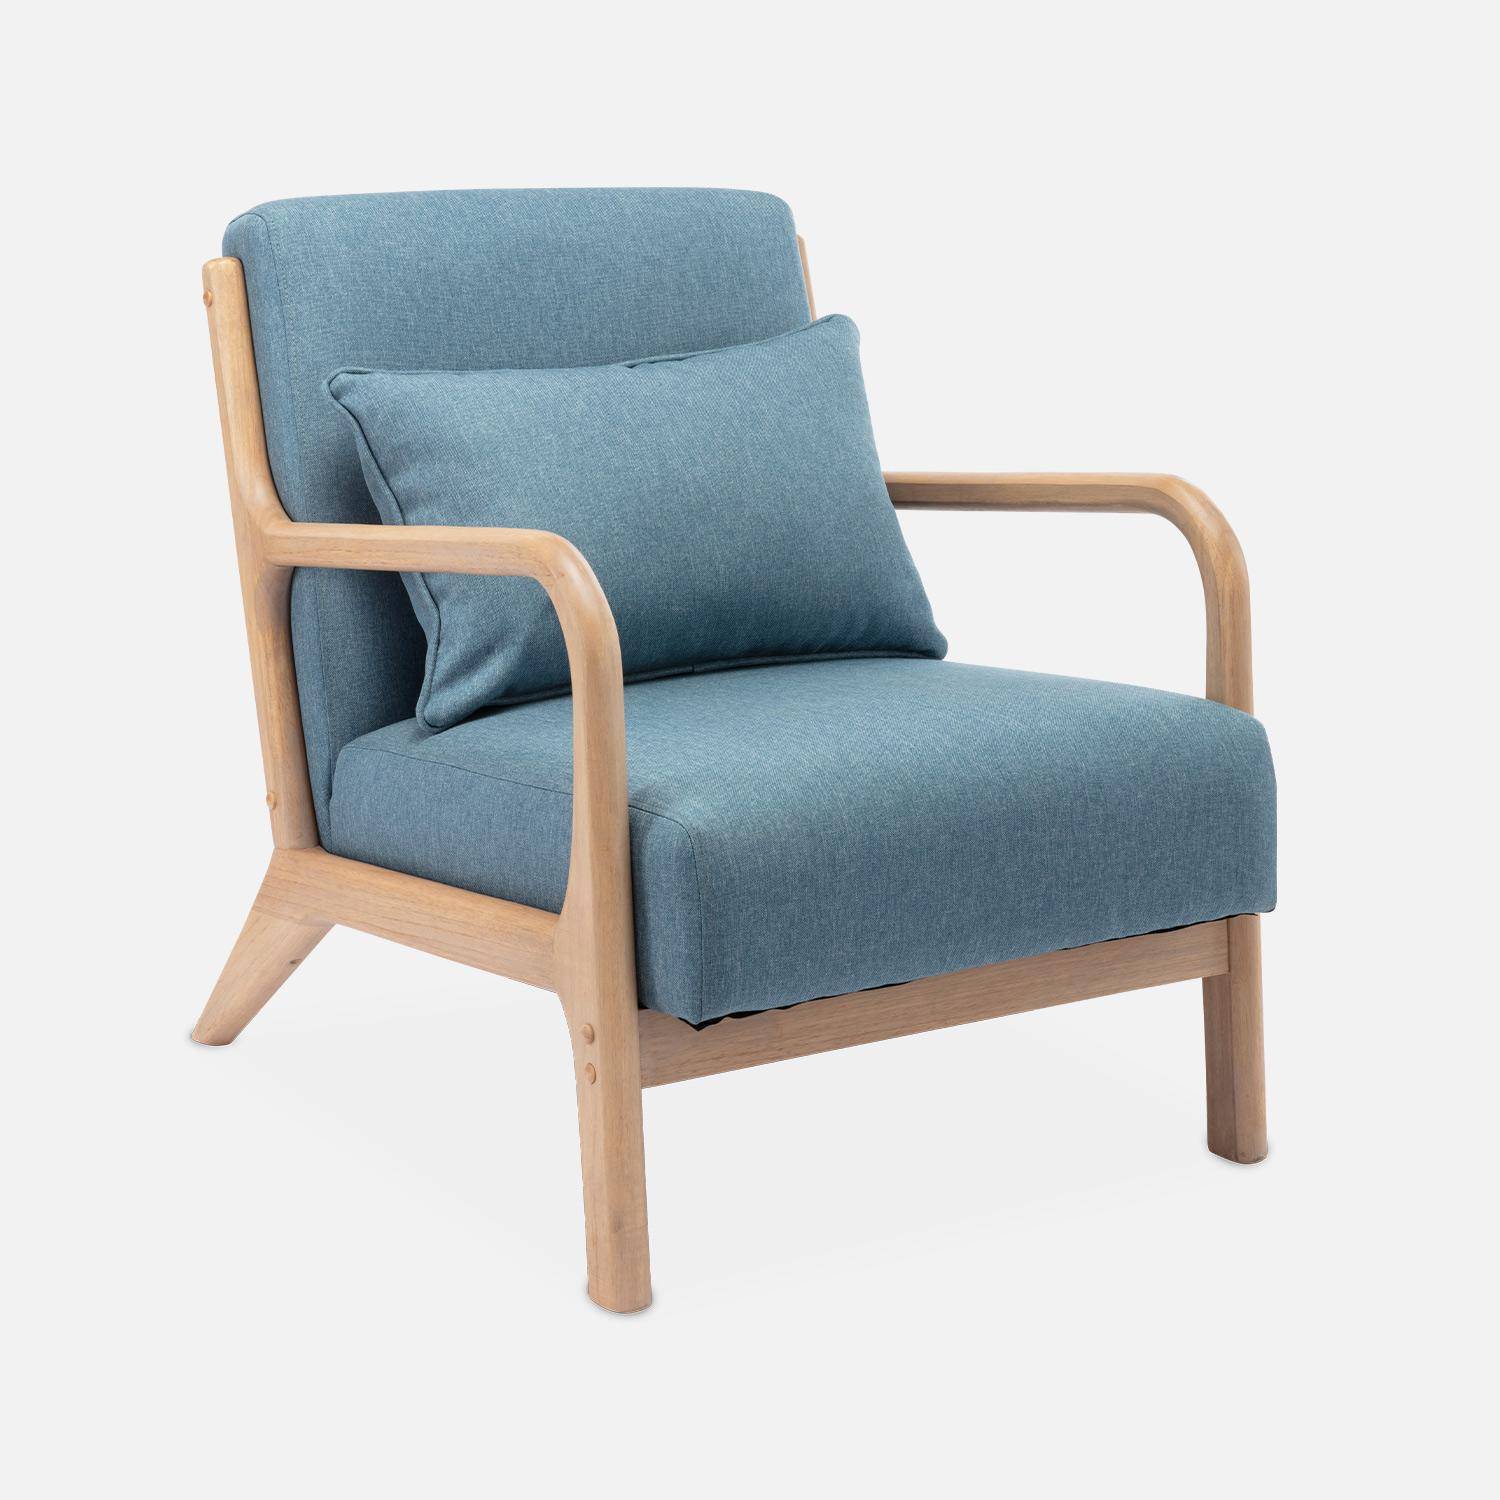 Cadeirão de design em madeira e tecido, 1 assento reto fixo, pernas escandinavas em forma de compasso, assento confortável, estrutura em madeira maciça, azul,sweeek,Photo4